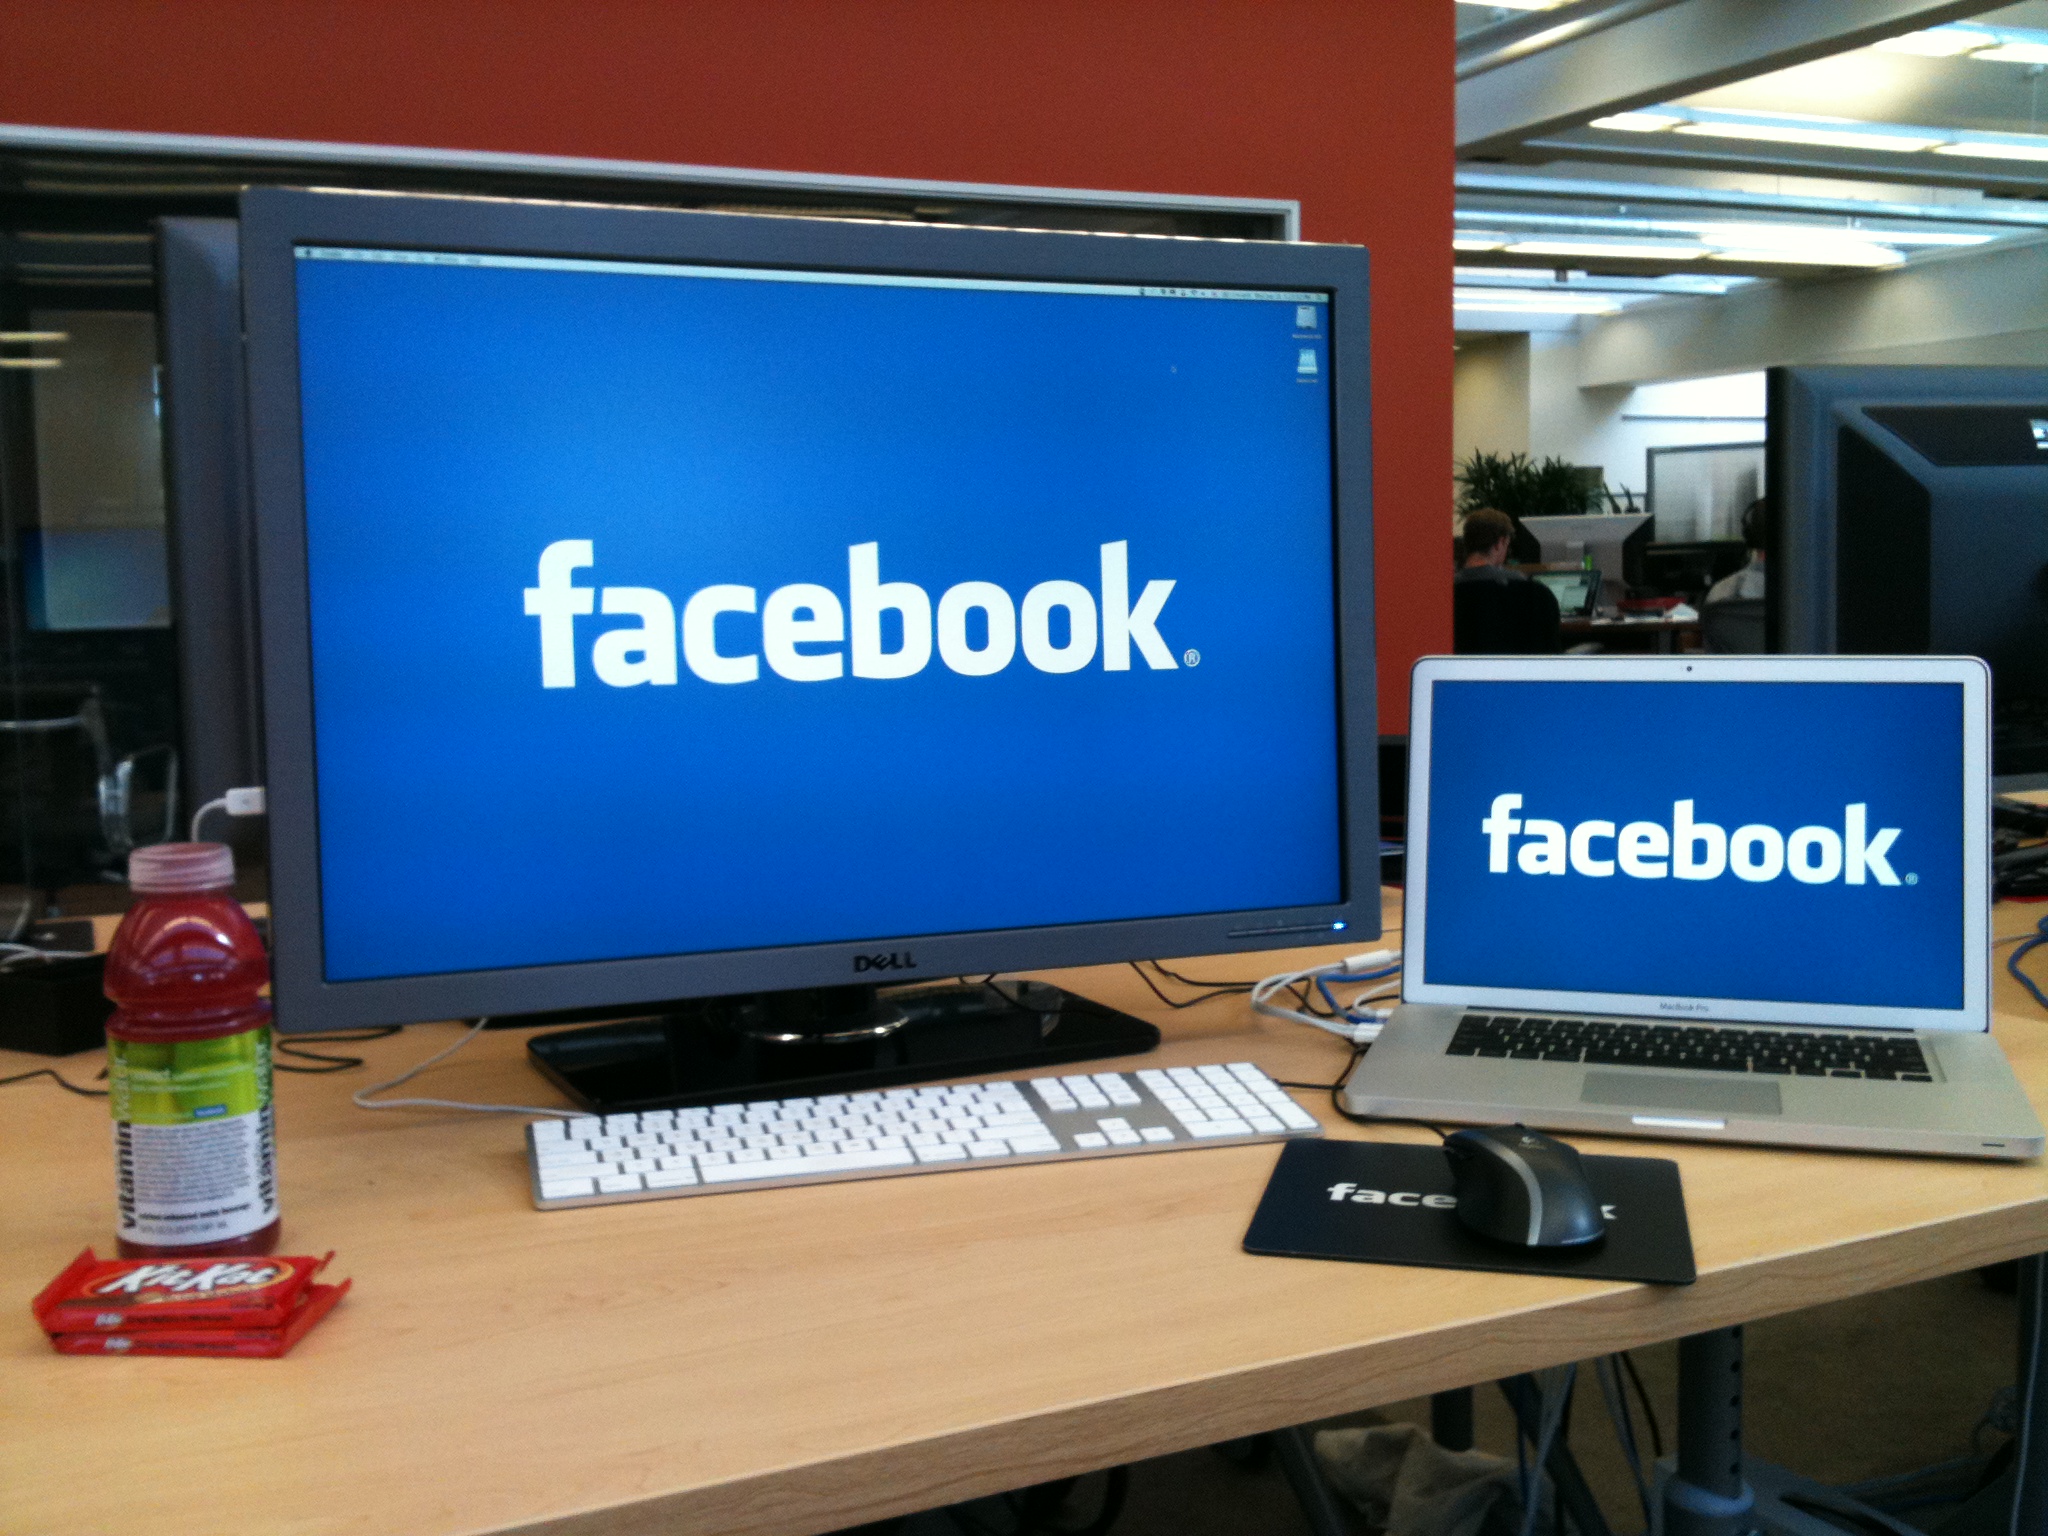 अब फेसबुकको नाम परिवर्तन हुने, रिब्राण्डिङ गर्दै कम्पनी